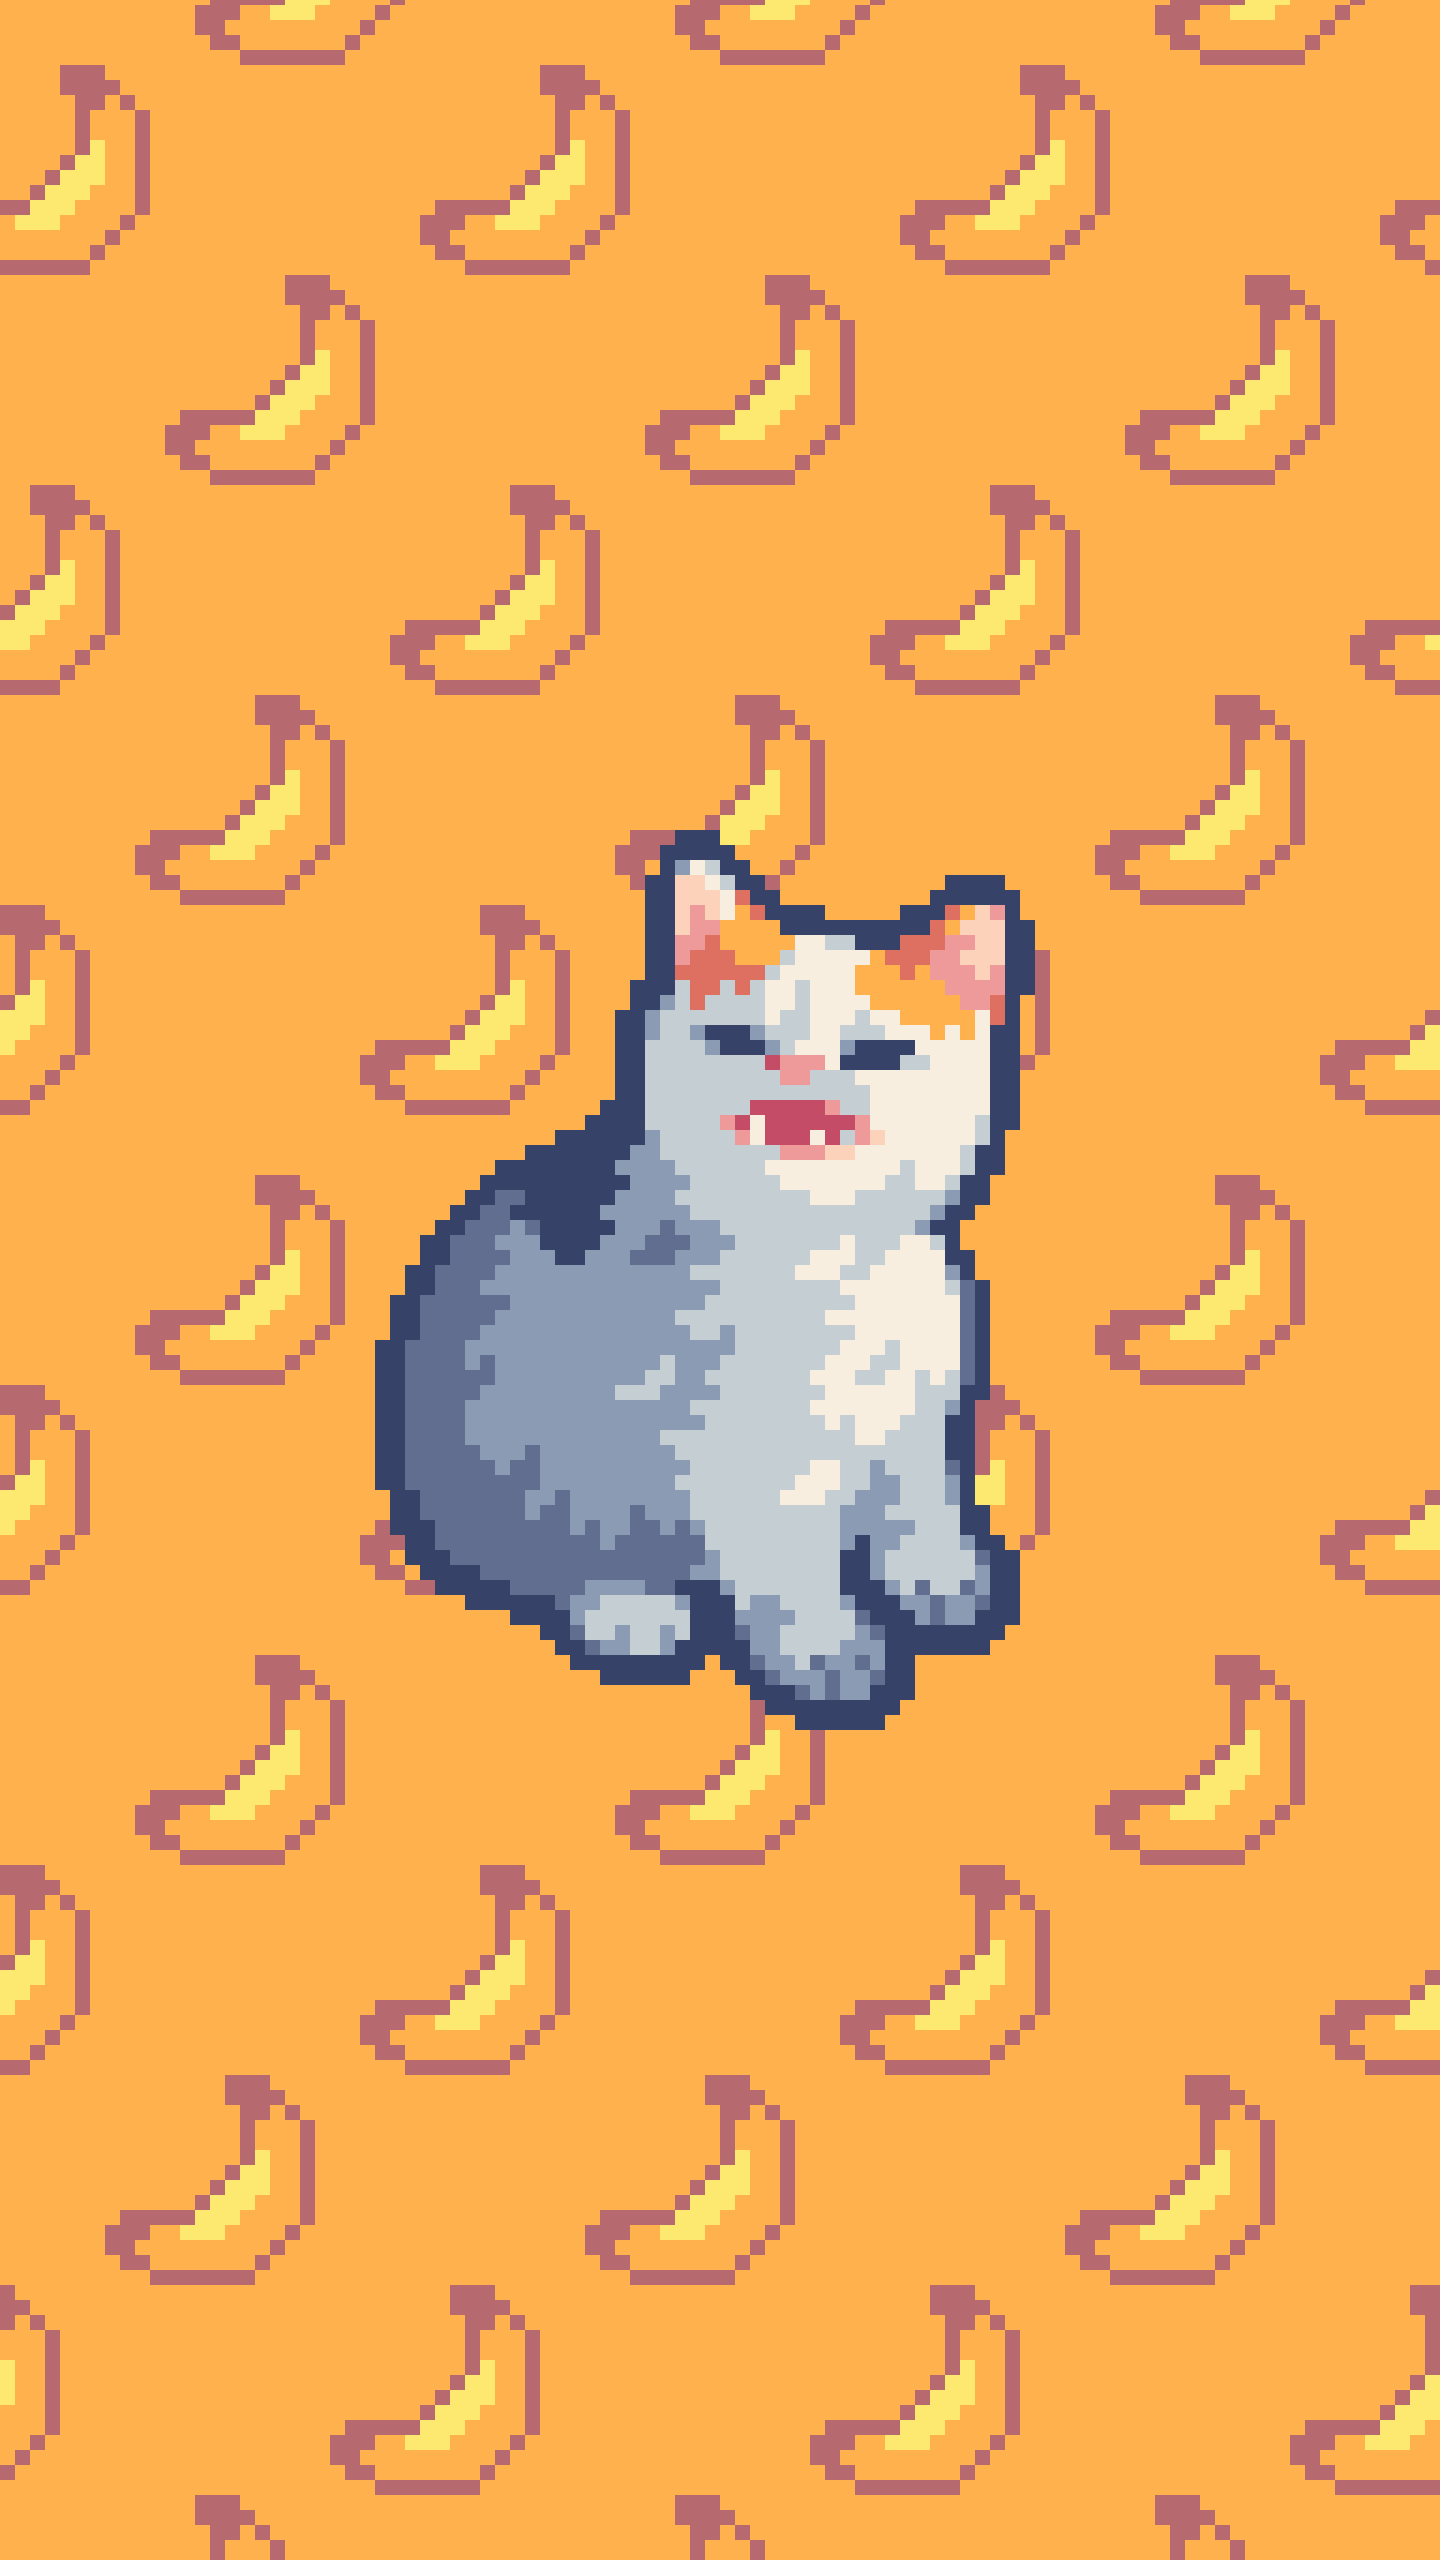 Banana Cat Pixel Art - HD Wallpaper 